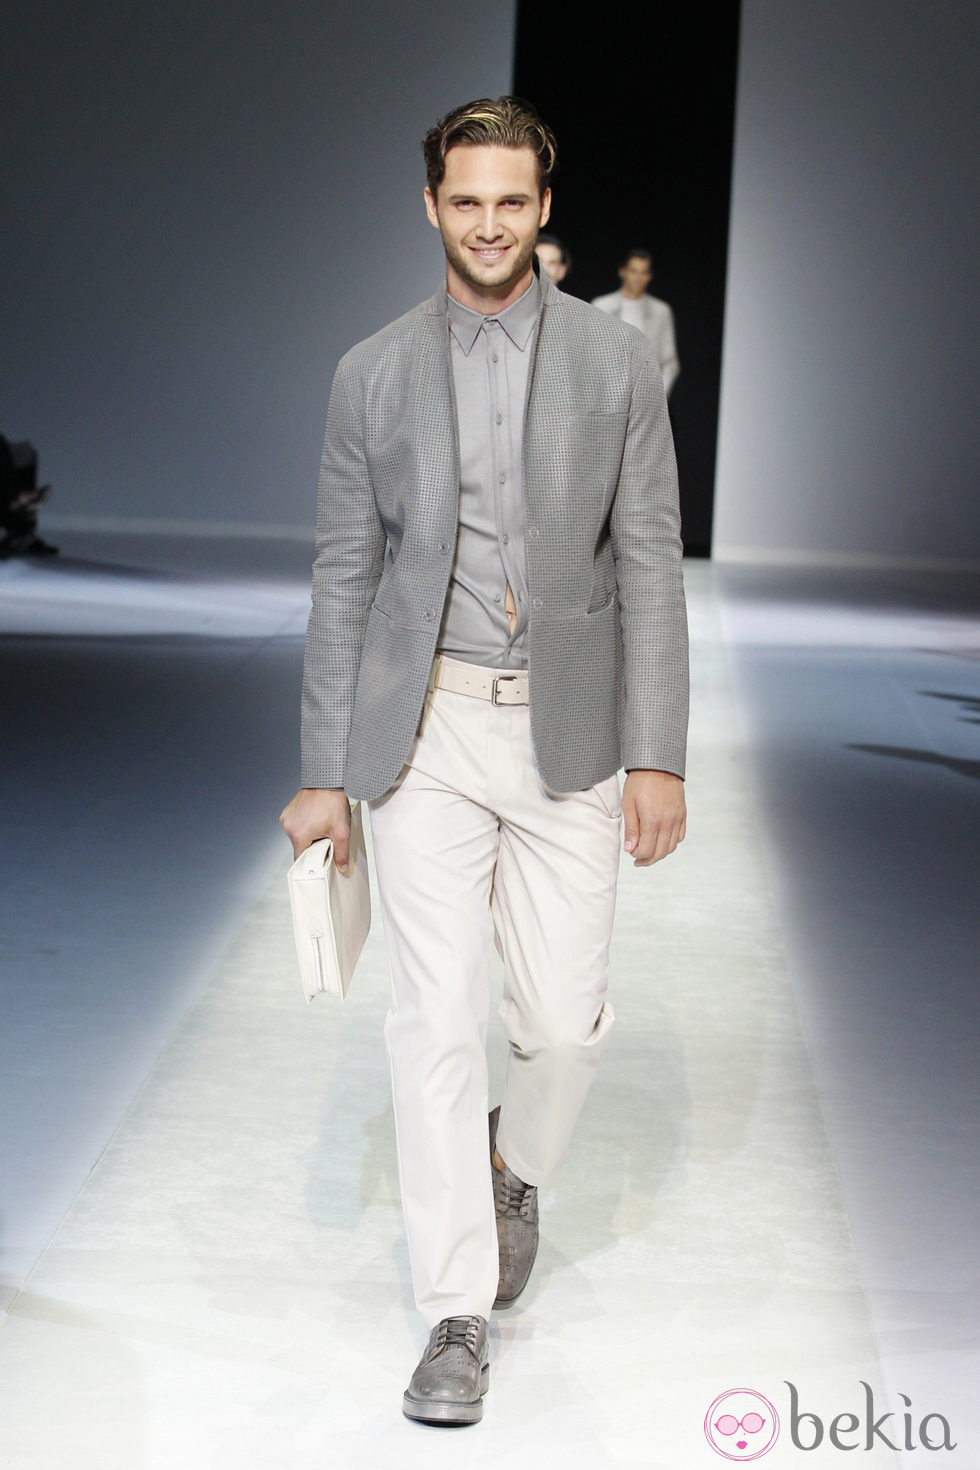 Chaqueta y camisa grises de la colección primavera/verano 2014 de Emporio Armani en la Semana de la Moda de Milán